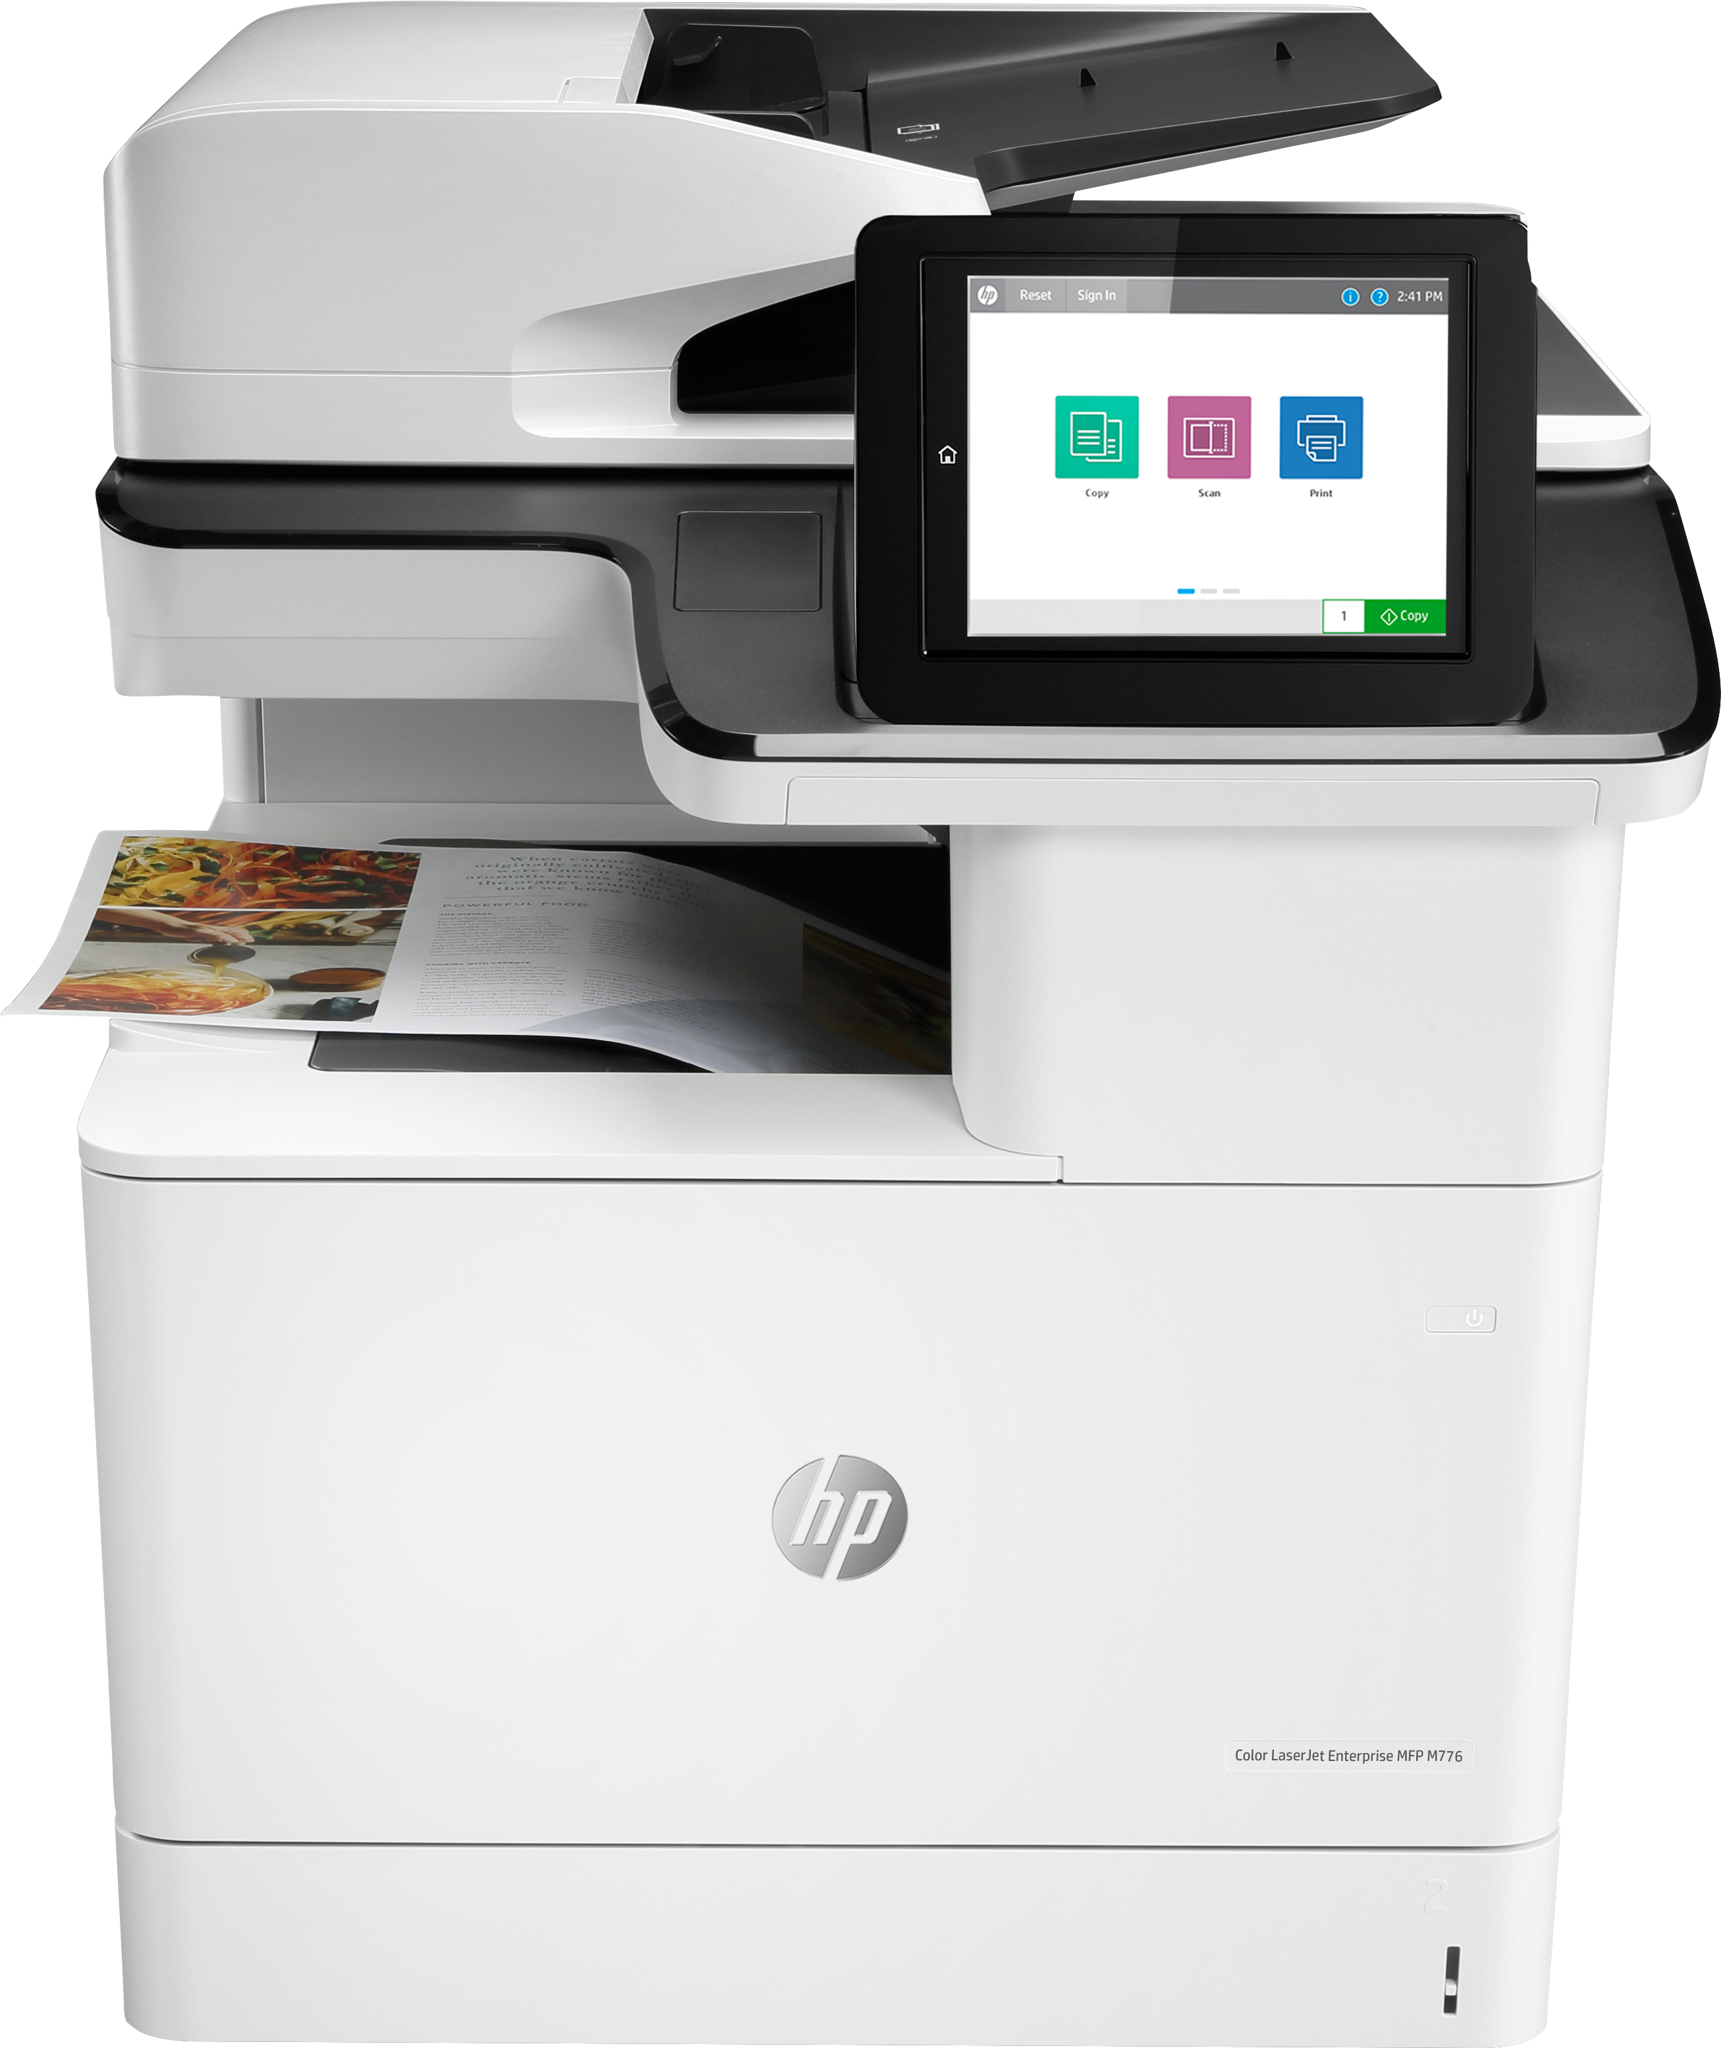 Bild von HP Color LaserJet Enterprise MFP M776dn - Drucken - Kopieren - Scannen und optionales Faxen - Beidseitiger Druck; Beidseitiges Scannen; Scannen an E-Mail - Laser - Farbdruck - 1200 x 1200 DPI - A3 - Direktdruck - Schwarz - Weiß